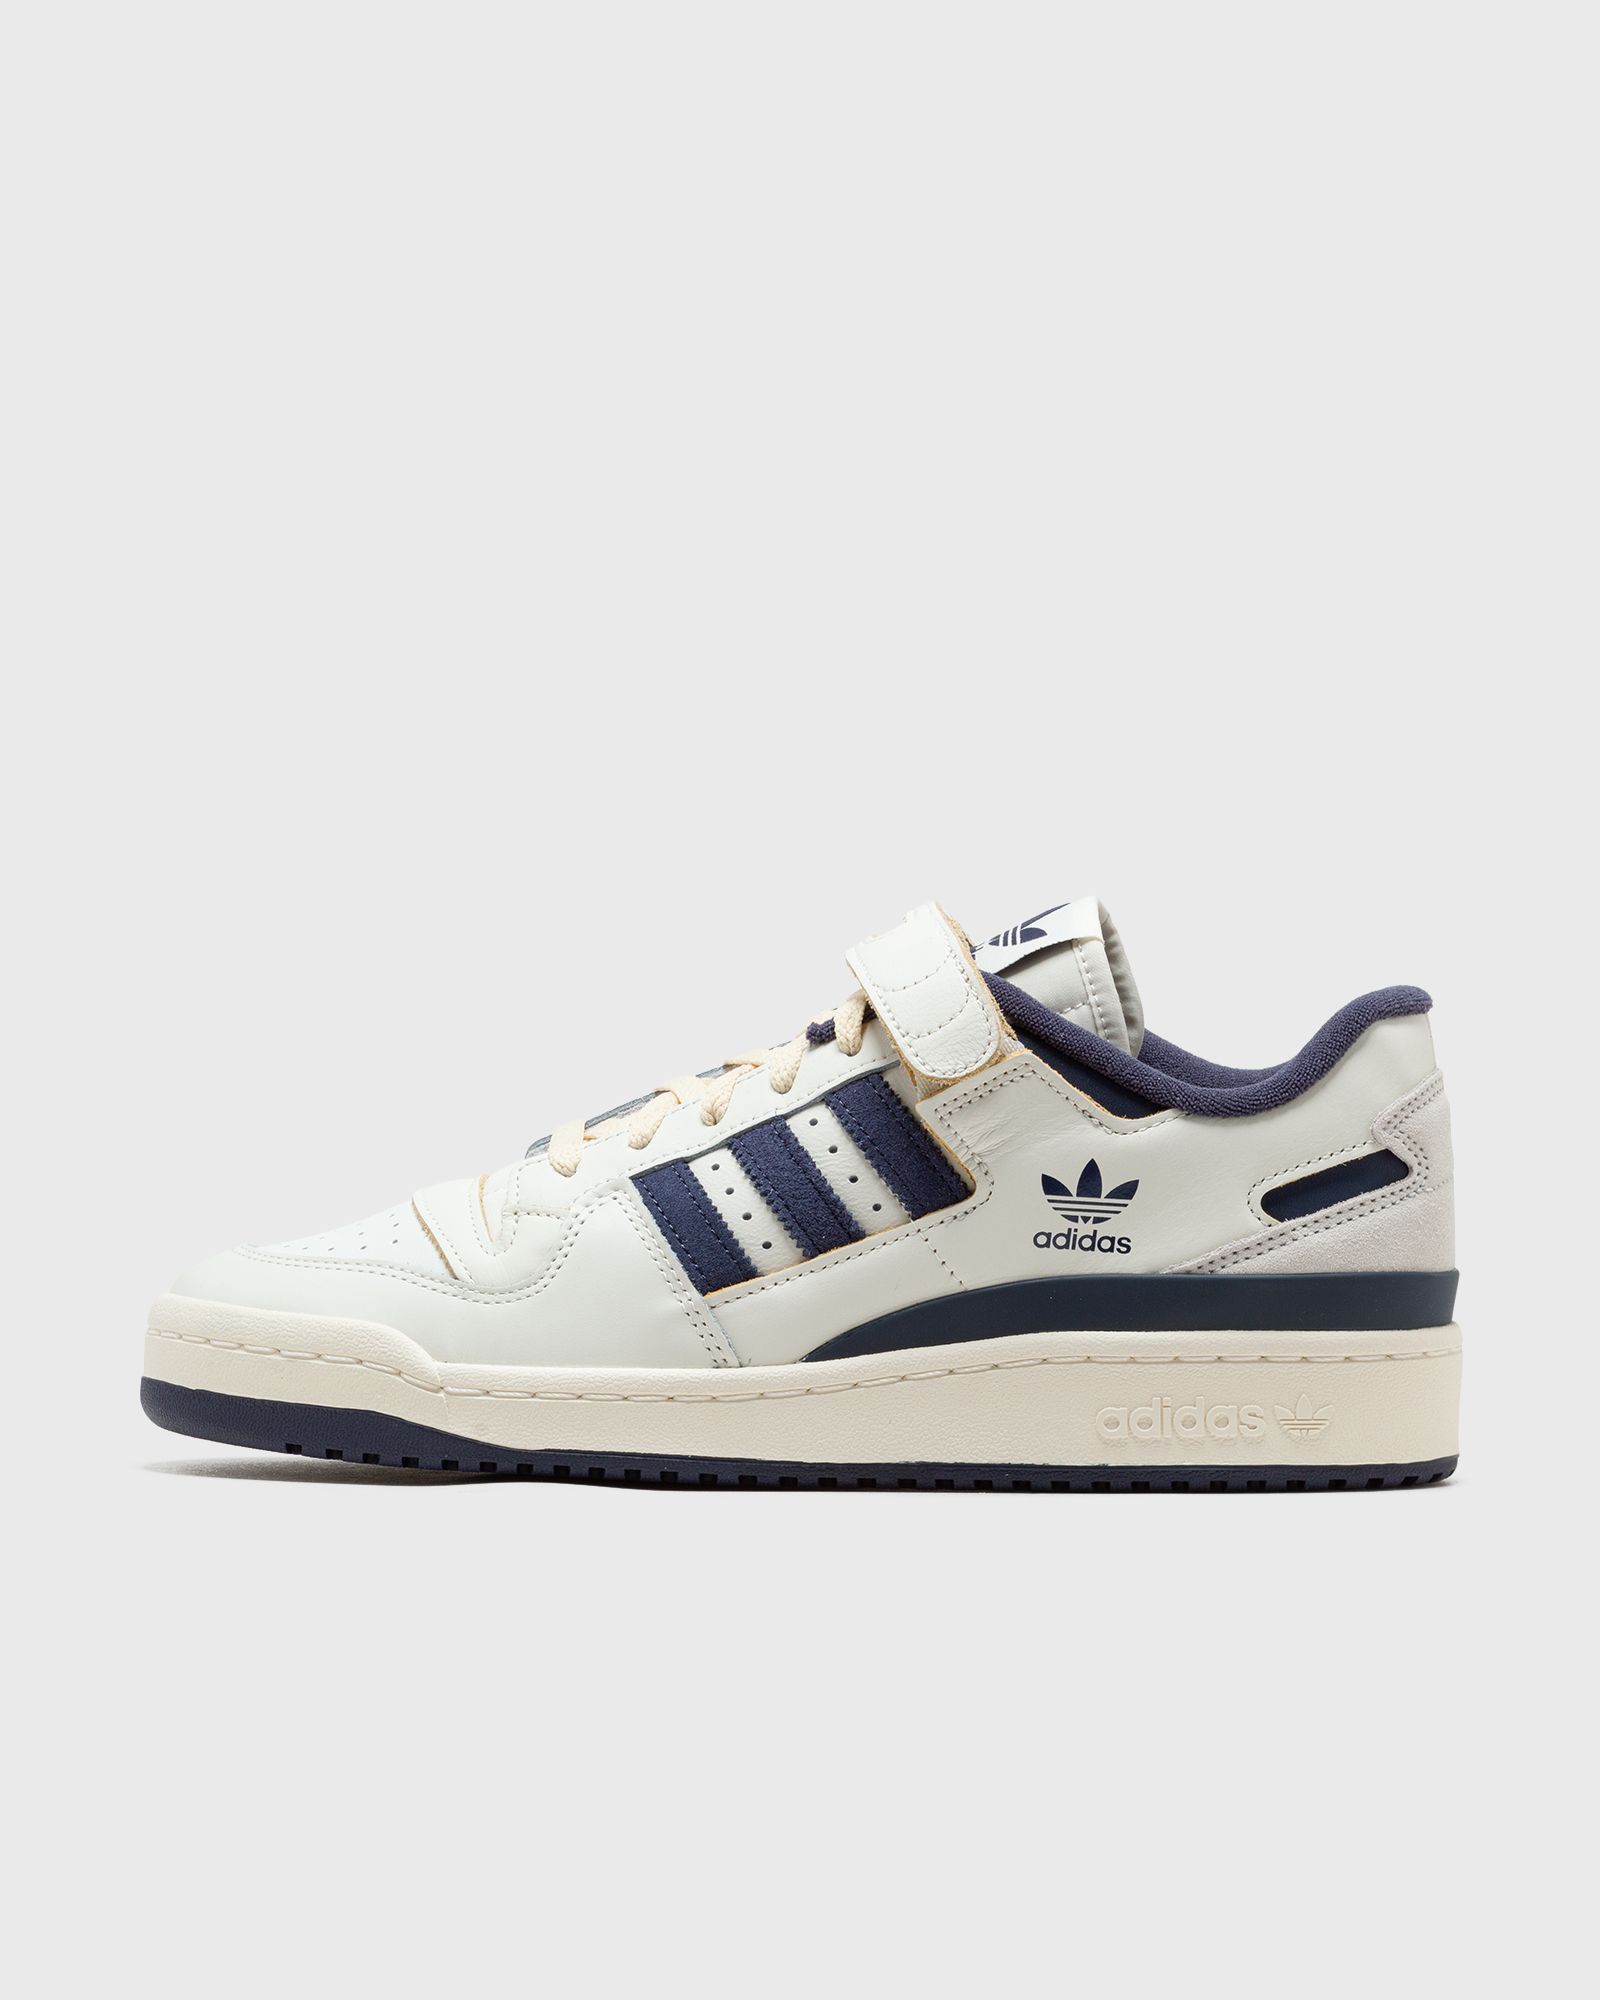 Adidas - forum 84 low men lowtop blue|white in größe:44